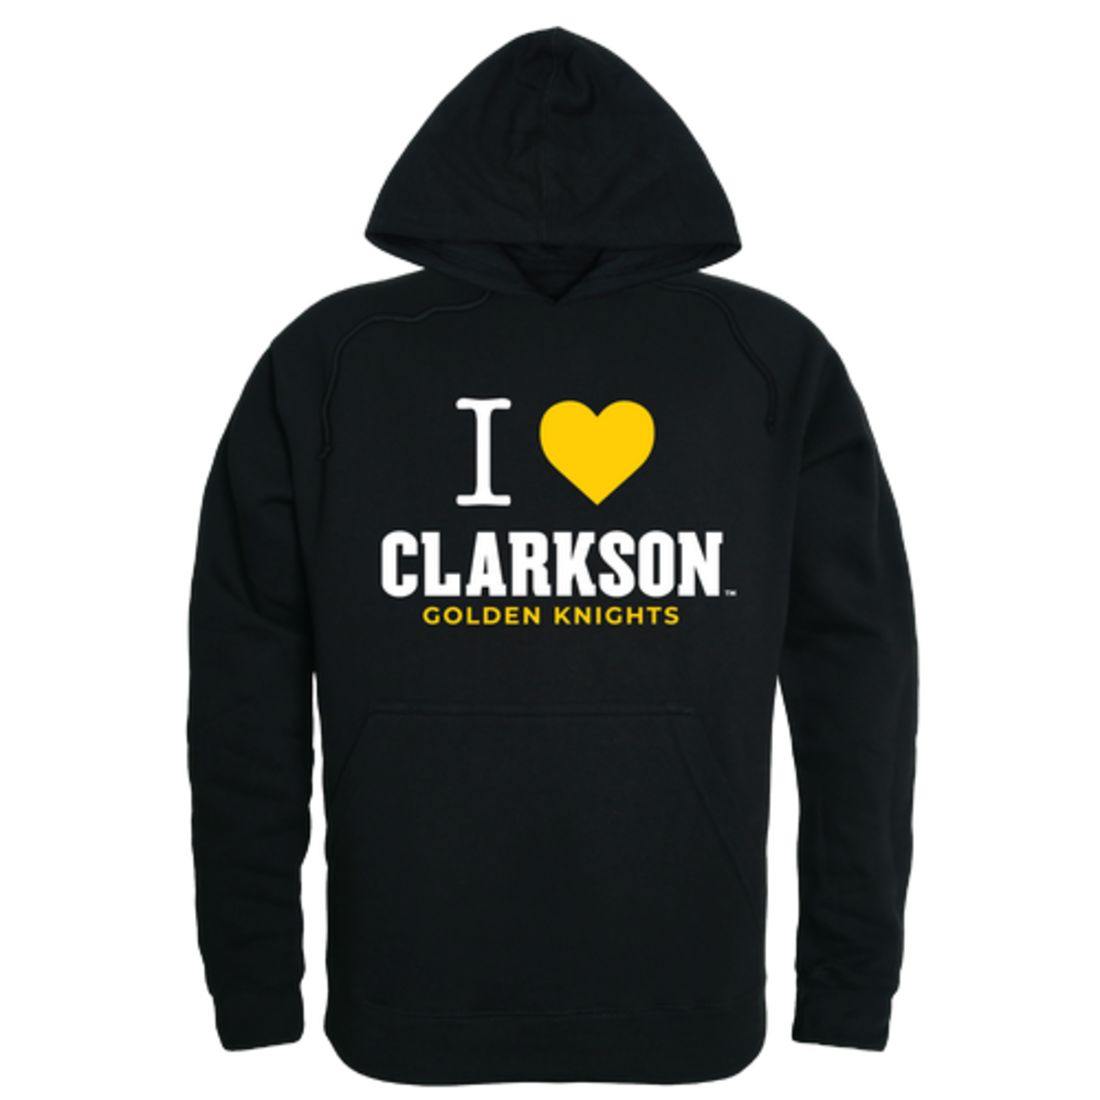 I Love Clarkson University Golden Knights Hoodie Sweatshirt-Campus-Wardrobe